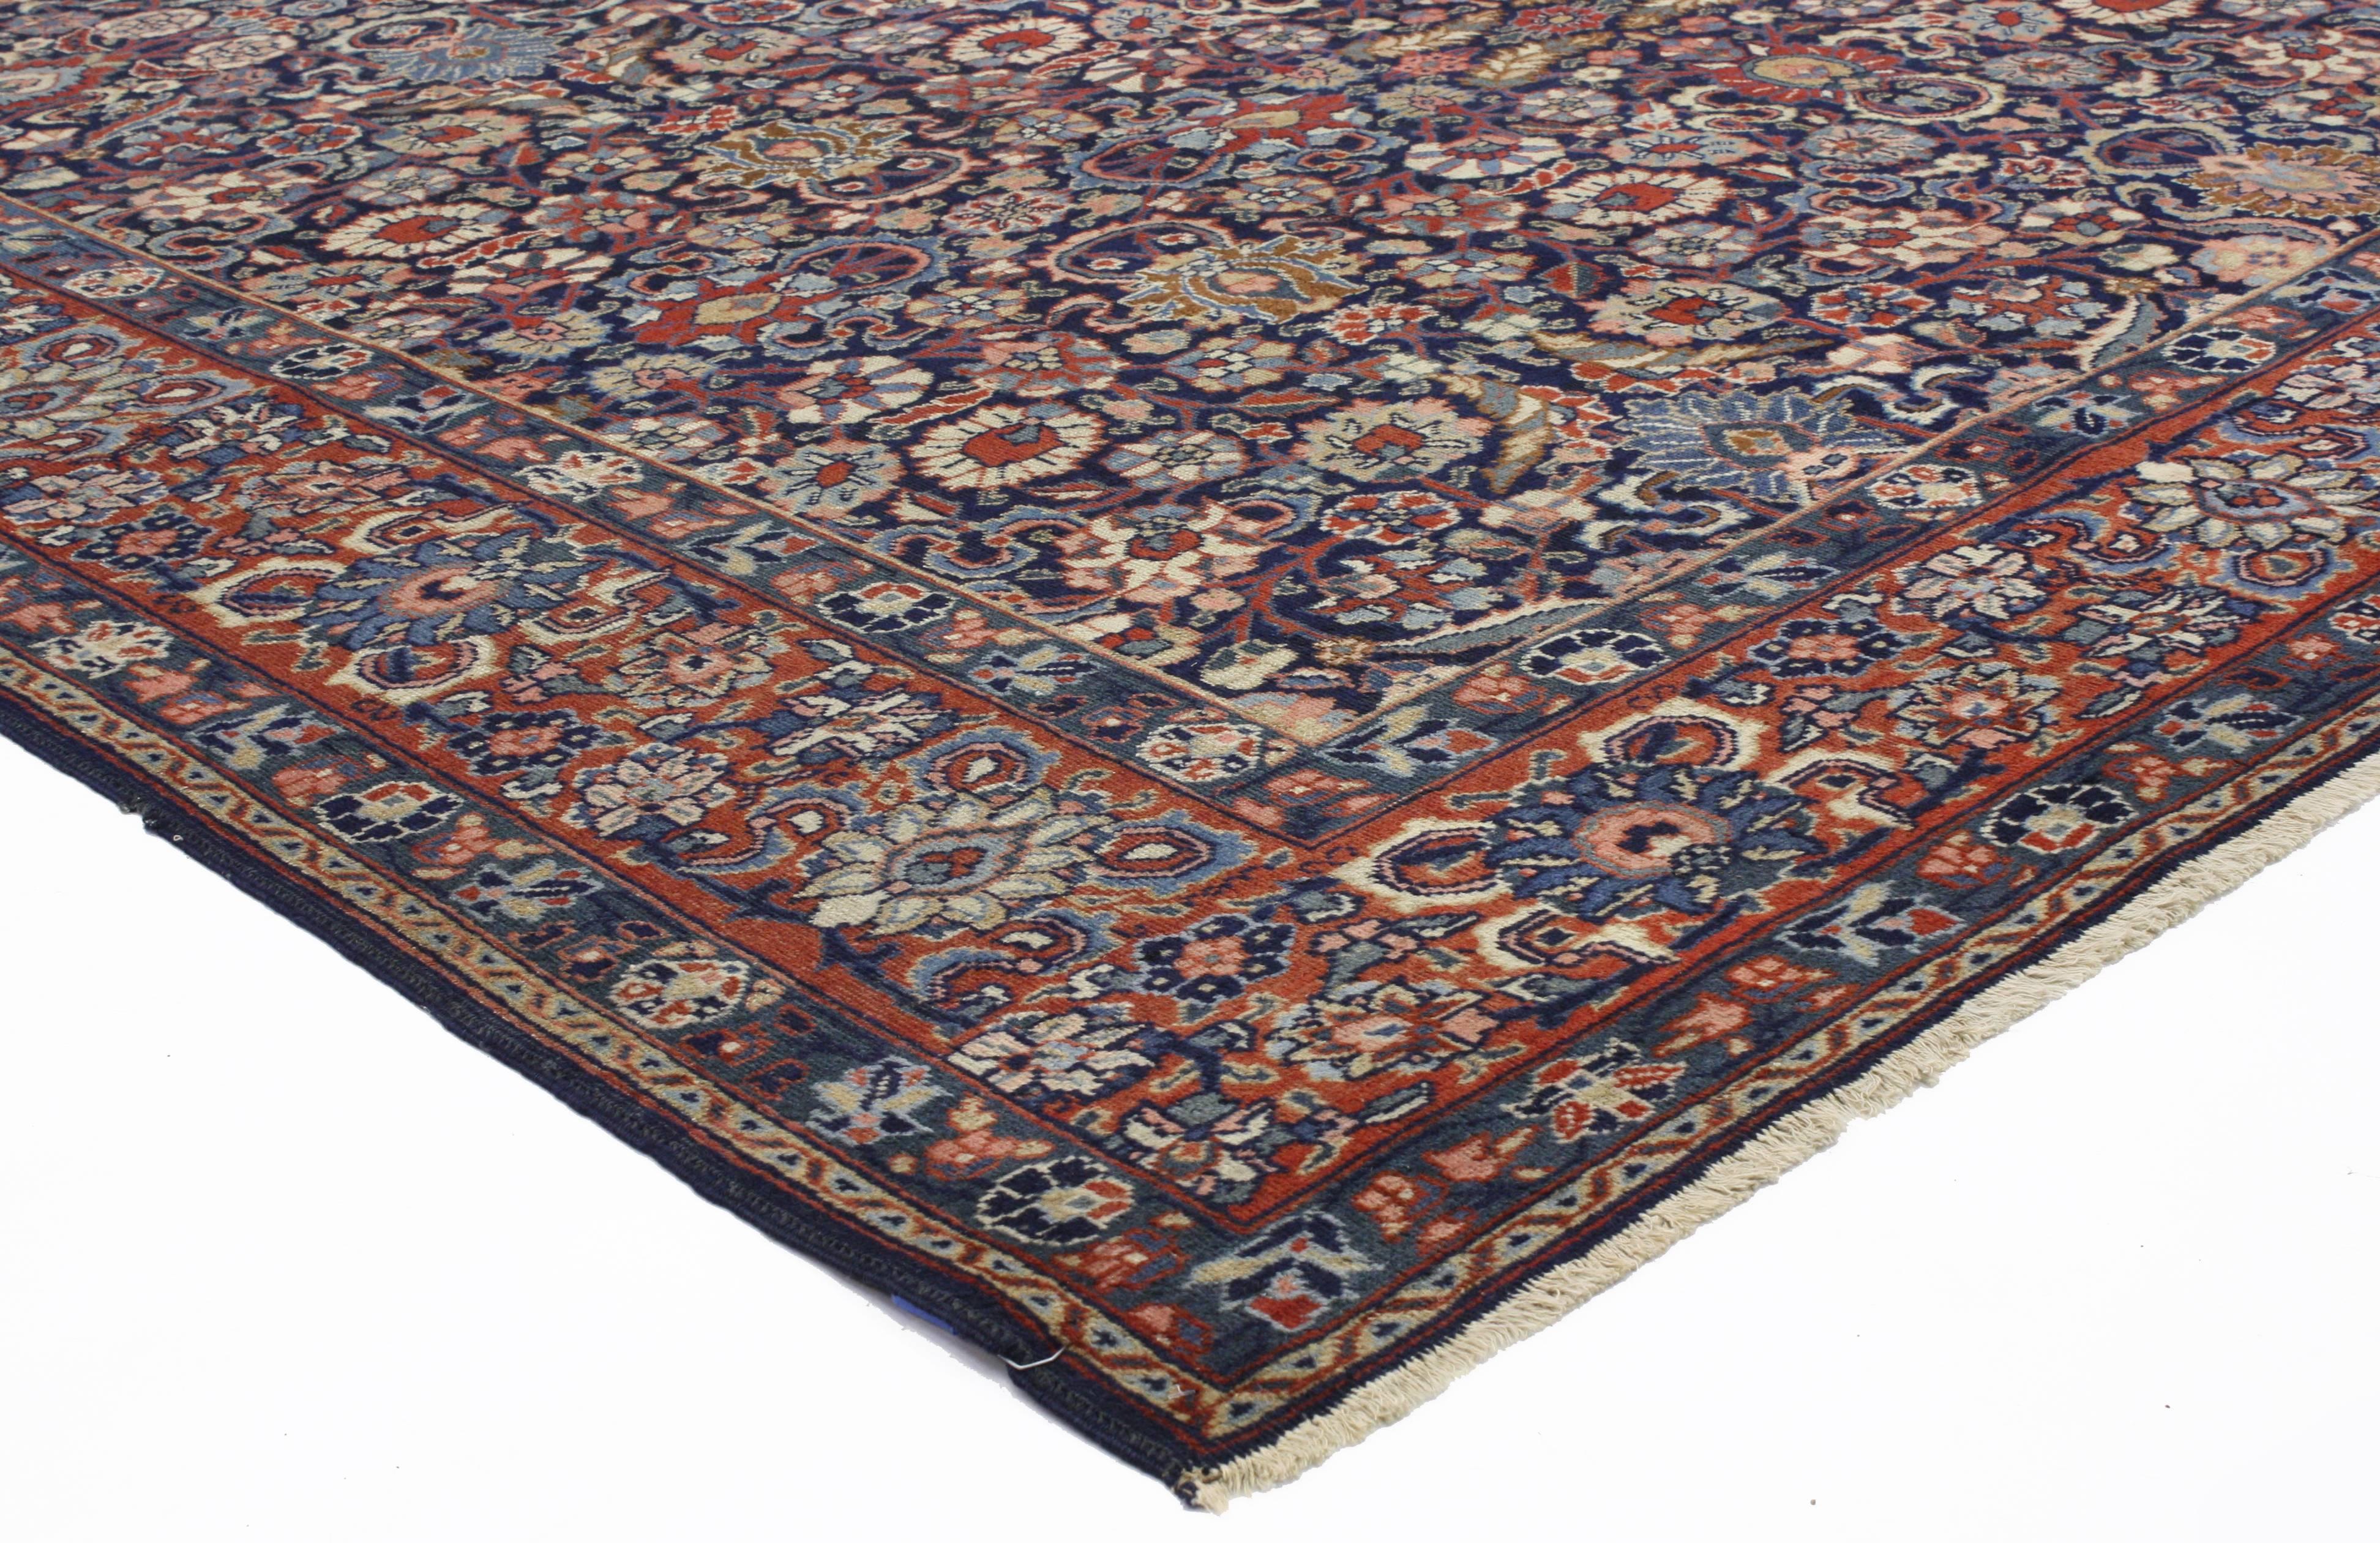 72860 Antiker persischer Täbris-Teppich im traditionellen Stil. Opulente Blau- und Rottöne bereichern die glänzende Komposition dieses prächtigen antiken persischen Täbris-Teppichs. Die traditionellen Farben und das florale Allover-Design strahlen